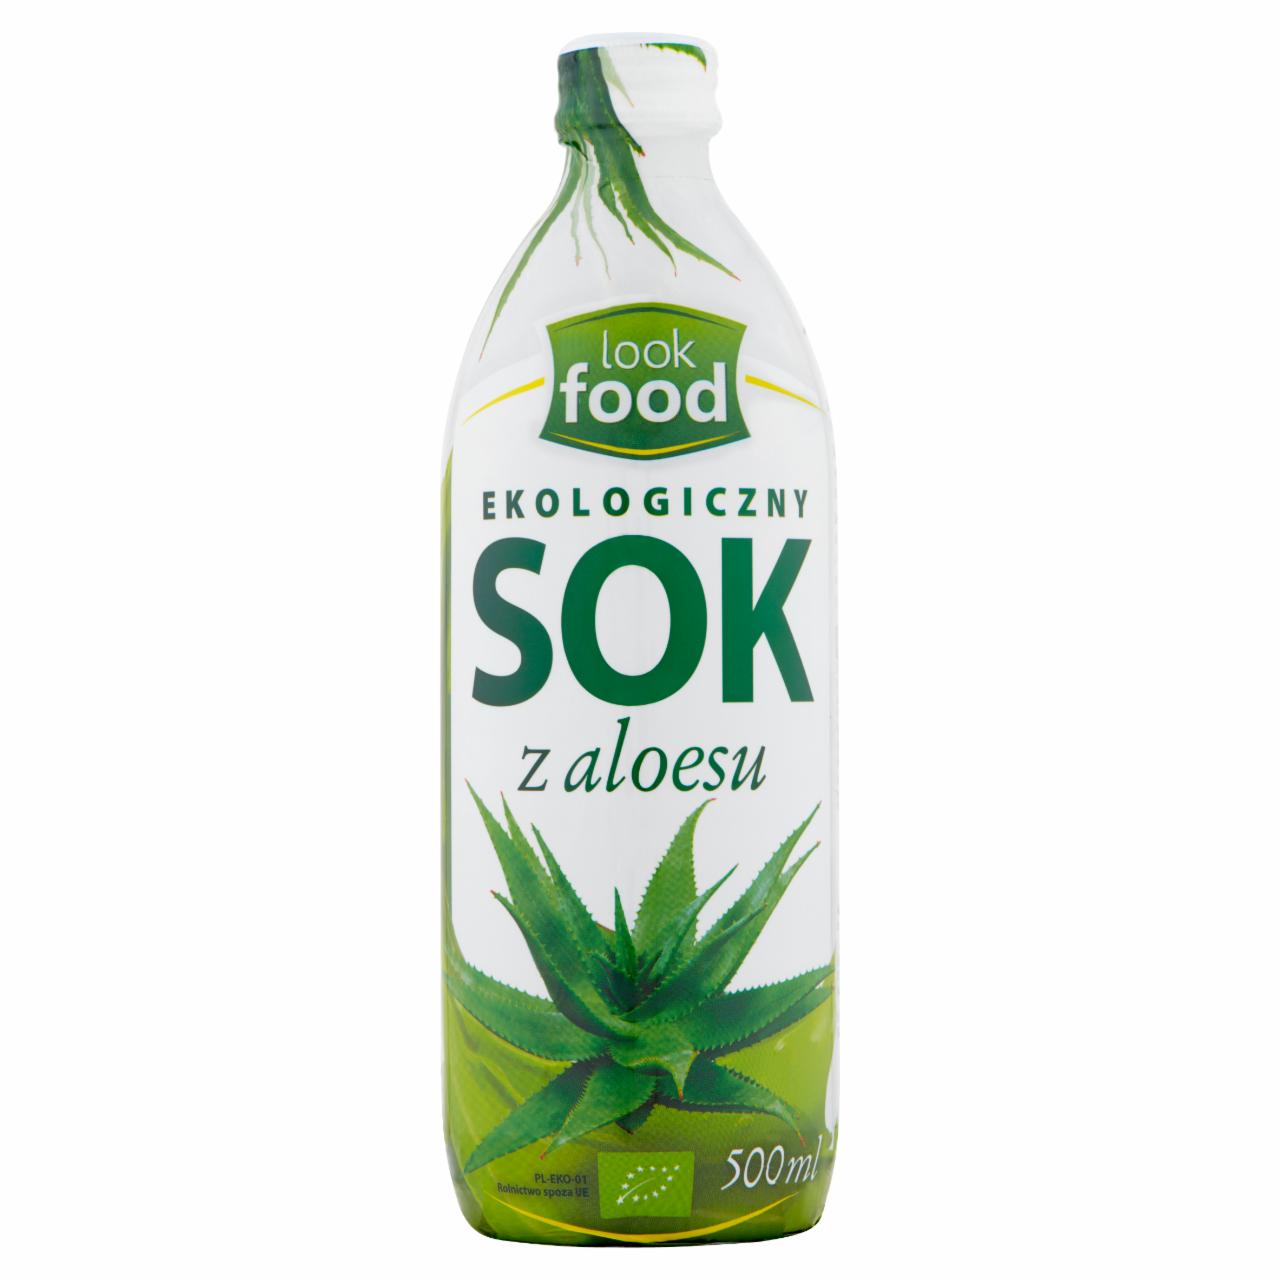 Zdjęcia - Look Food Ekologiczny sok z aloesu 500 ml